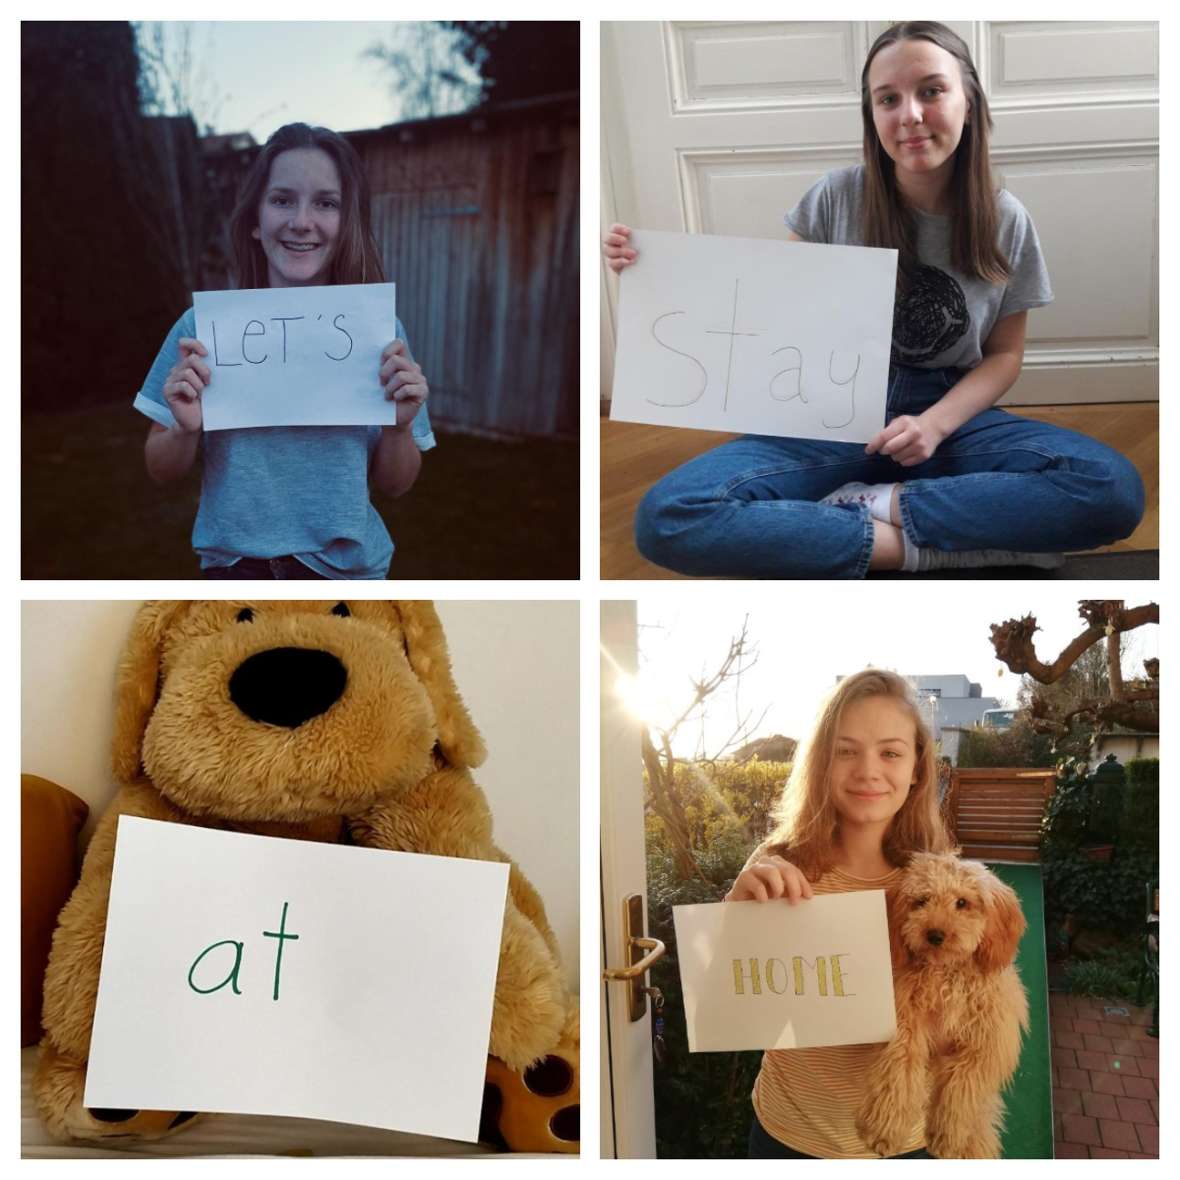 zu sehen sind 4 Bilder - davon sieht man auf 3 Bildern jeweils 1 Mädchen mit einem Zettel in der Hand; auf einem Bild ist ein Teddybär zu sehen mit einem Zettel